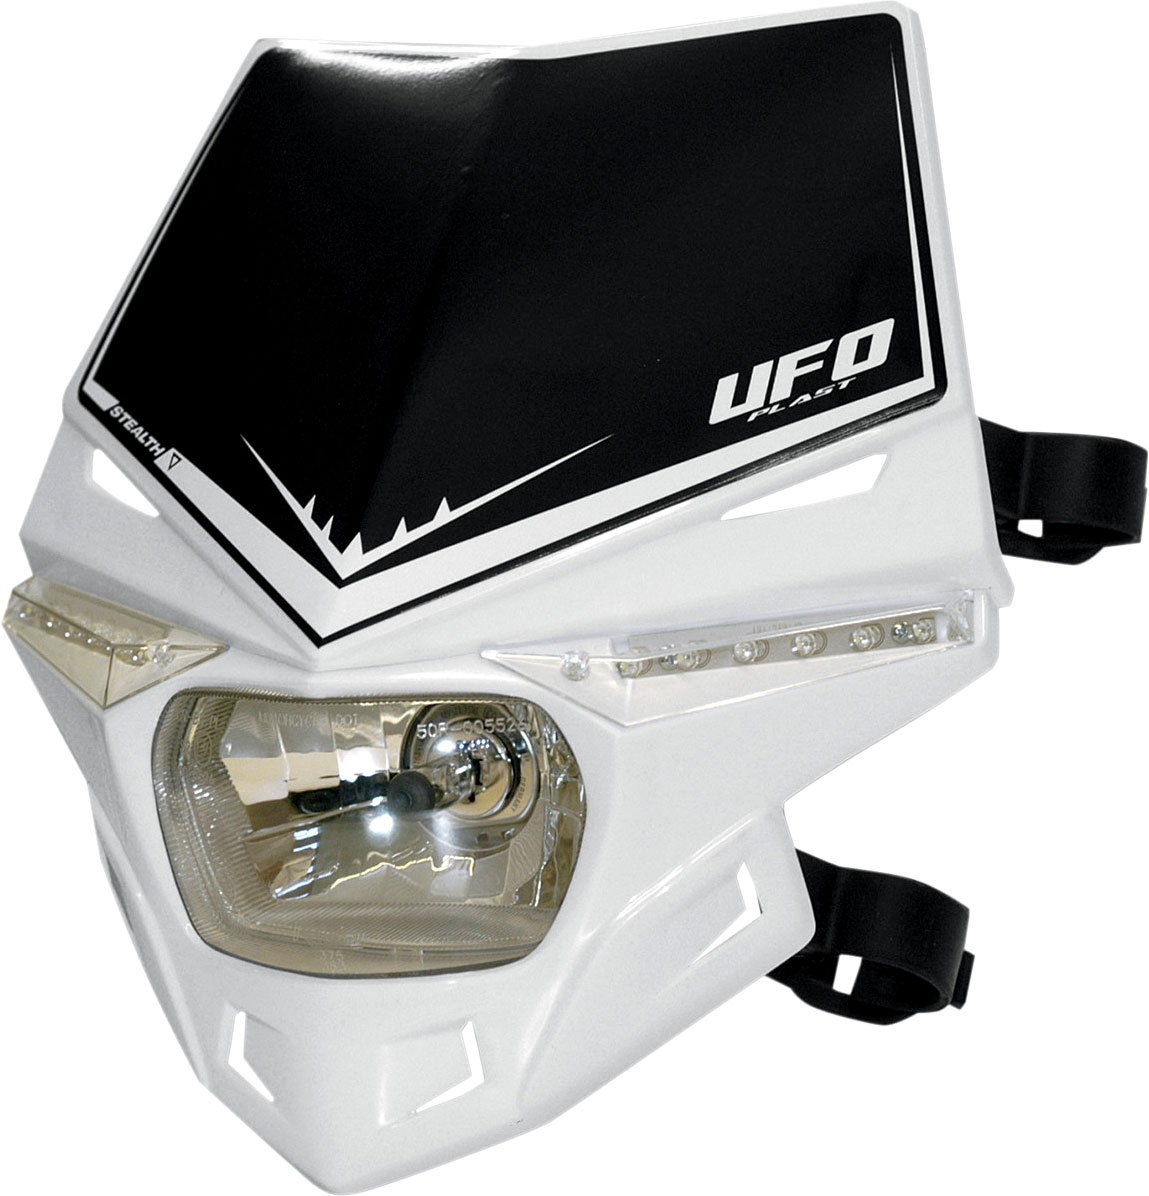 UFO MX PF01715, masque de phare - Blanc